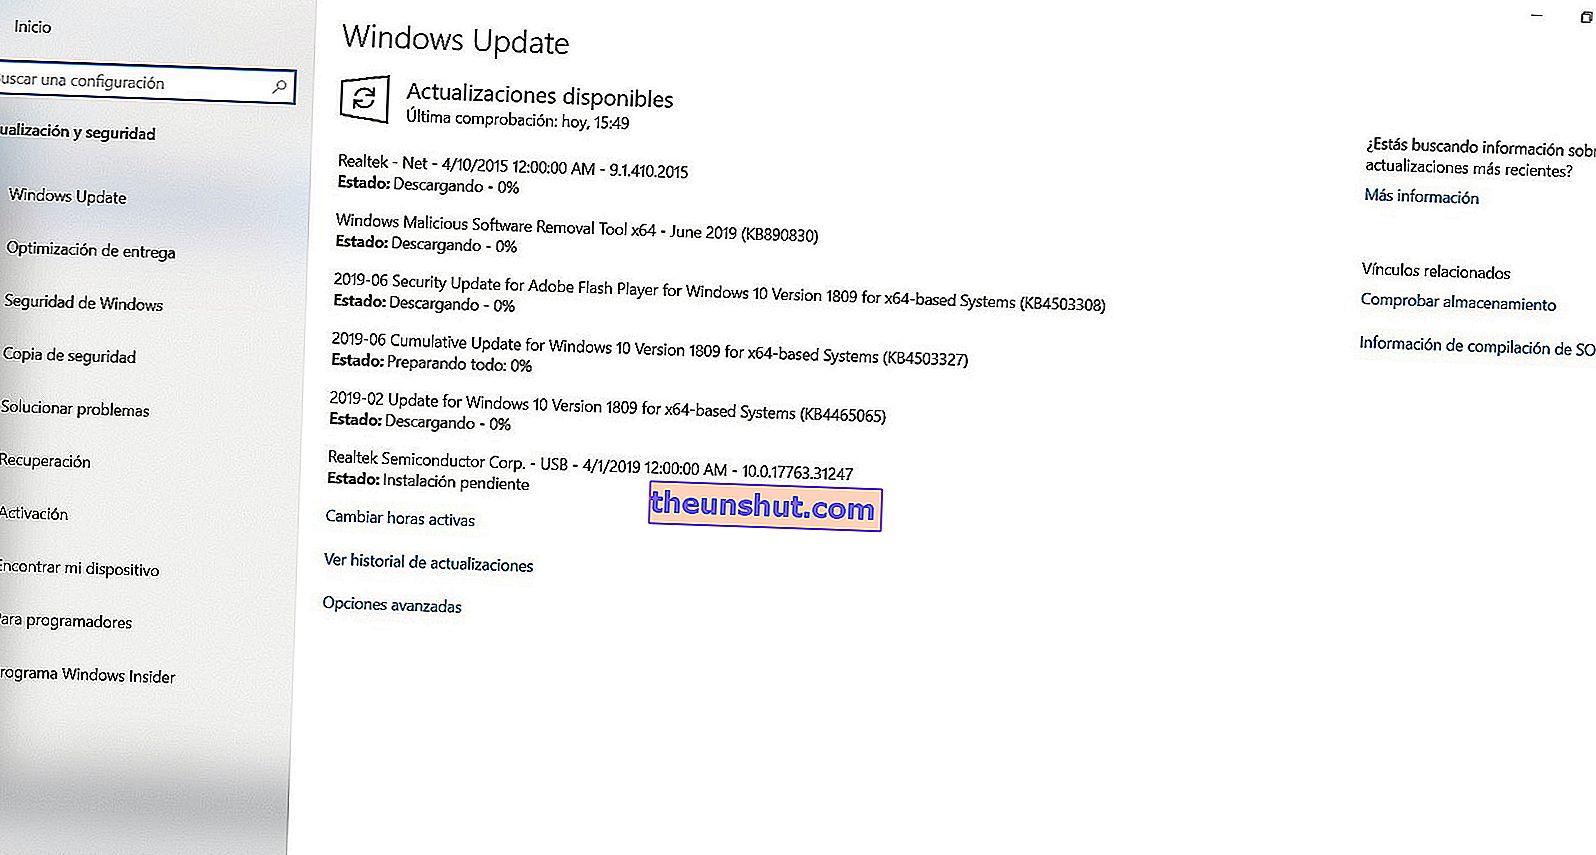 Oppdater hovedkortdrivere med Windows Update 2